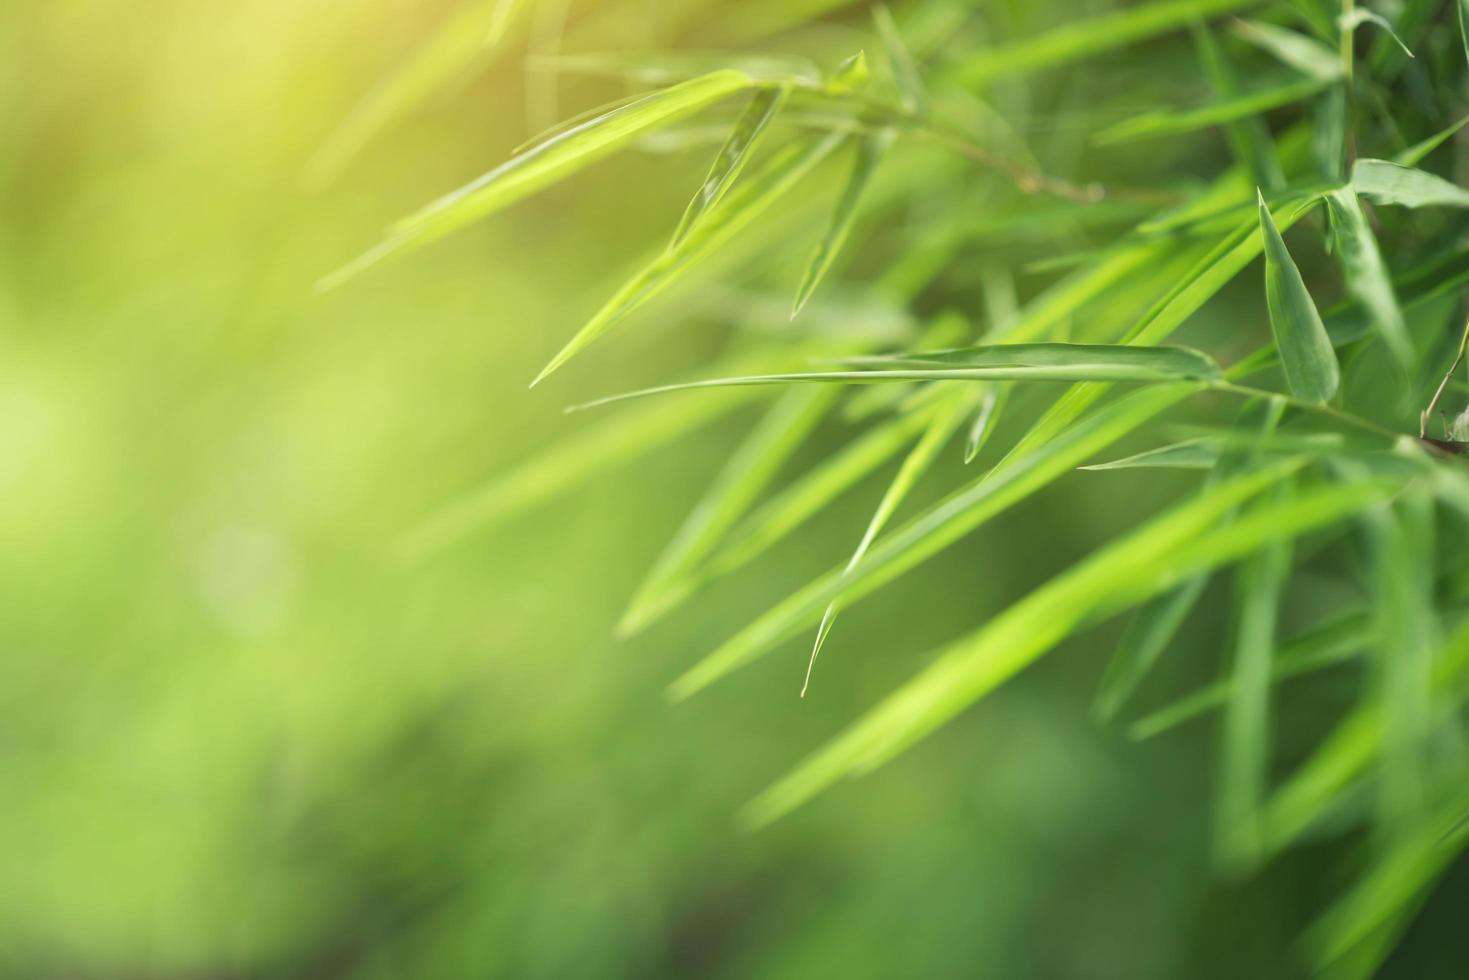 grüner Bambushintergrund foto